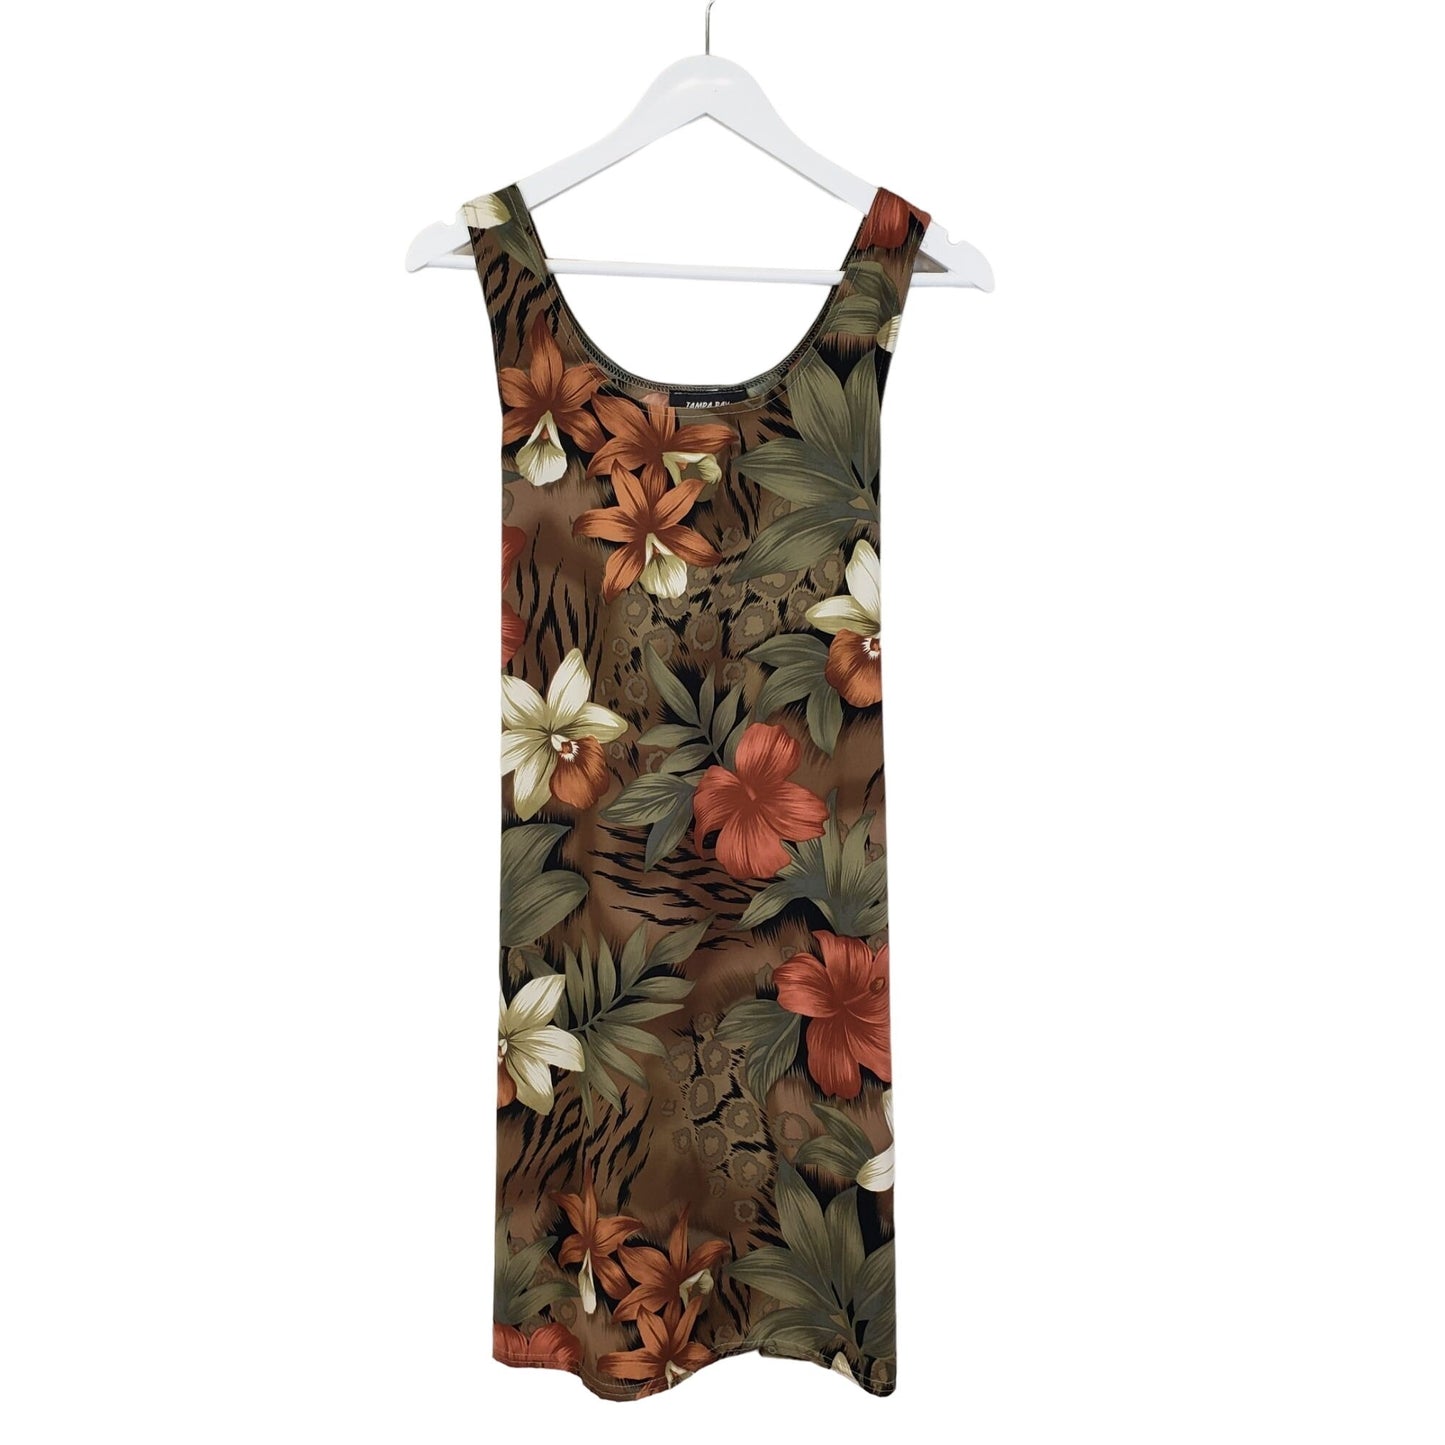 Tampa Bay Artwear Tropical Print Mini Dress Size M/L (est)